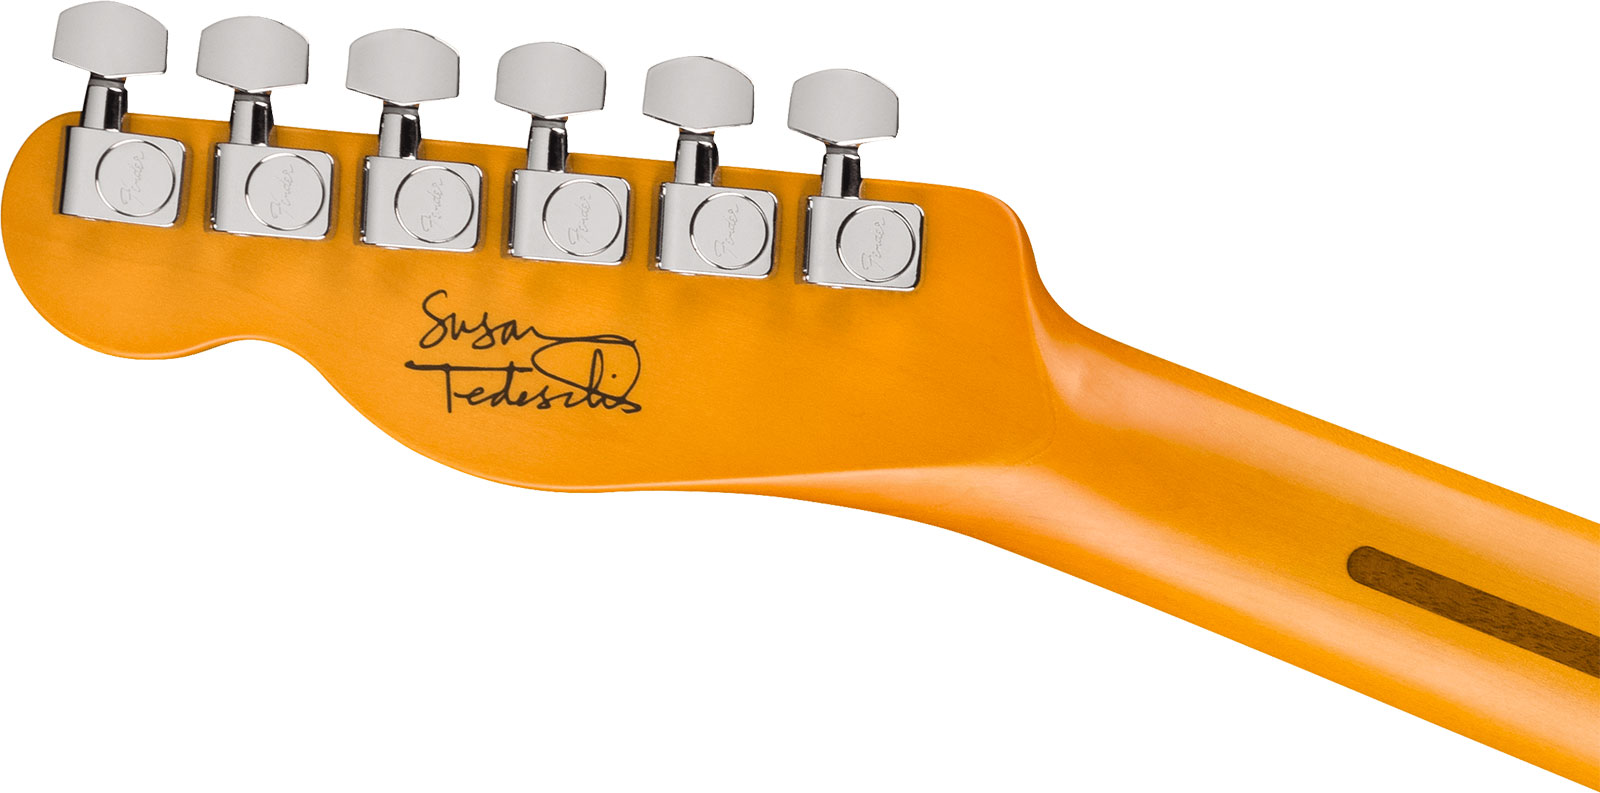 Fender Susan Tedeschi Tele Usa Signature 2s Ht Rw - Aged Caribbean Mist - Guitare Électrique Forme Tel - Variation 4